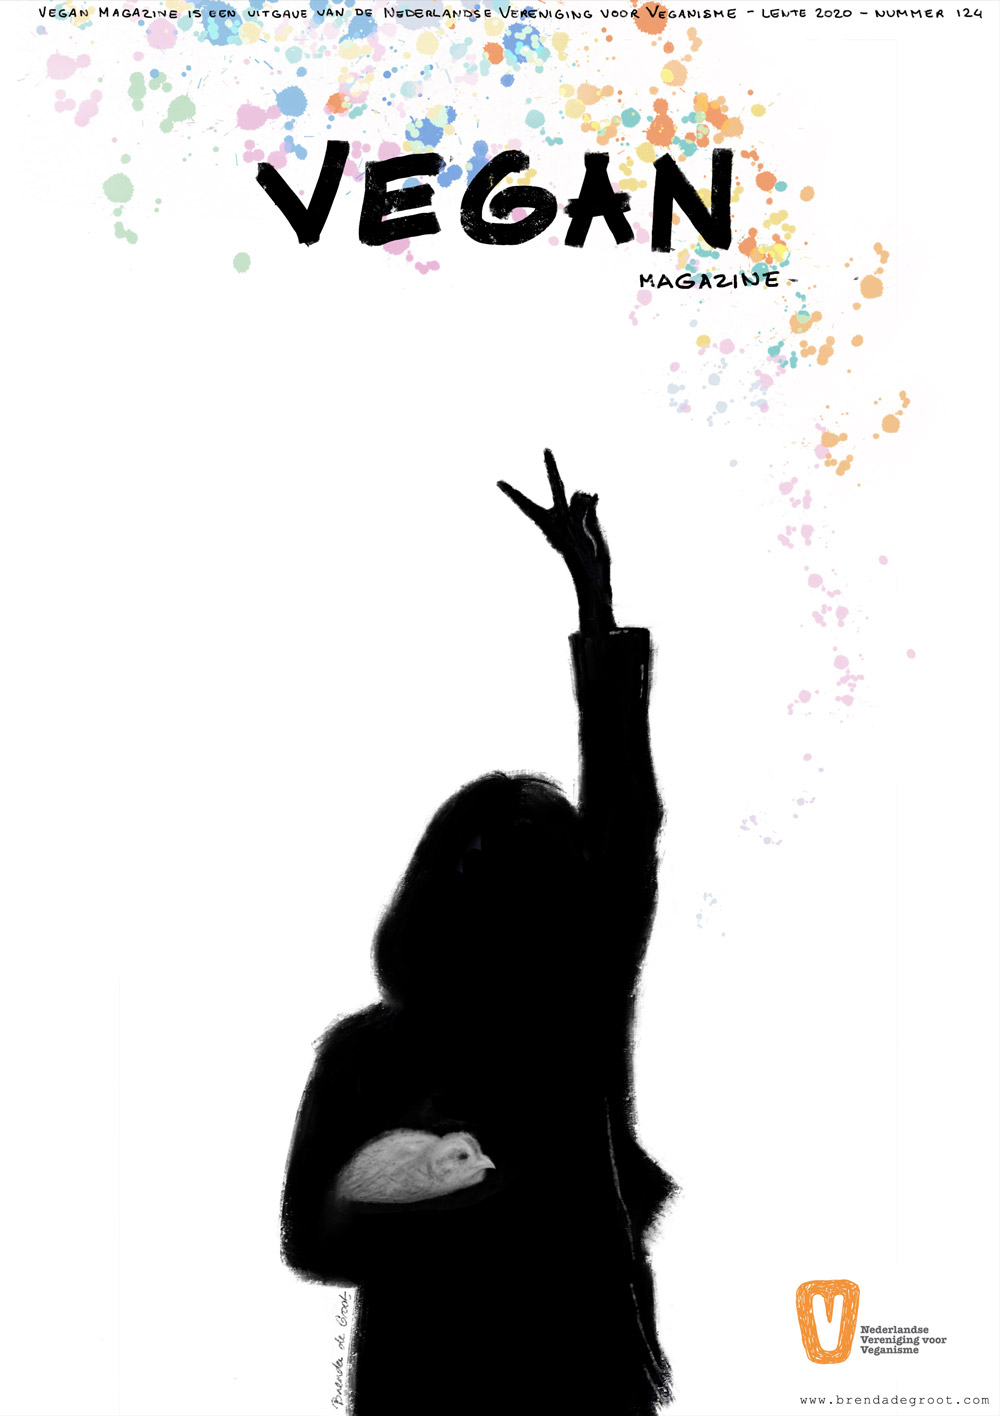 Vegan magazine cover illustration - Brenda de Groot